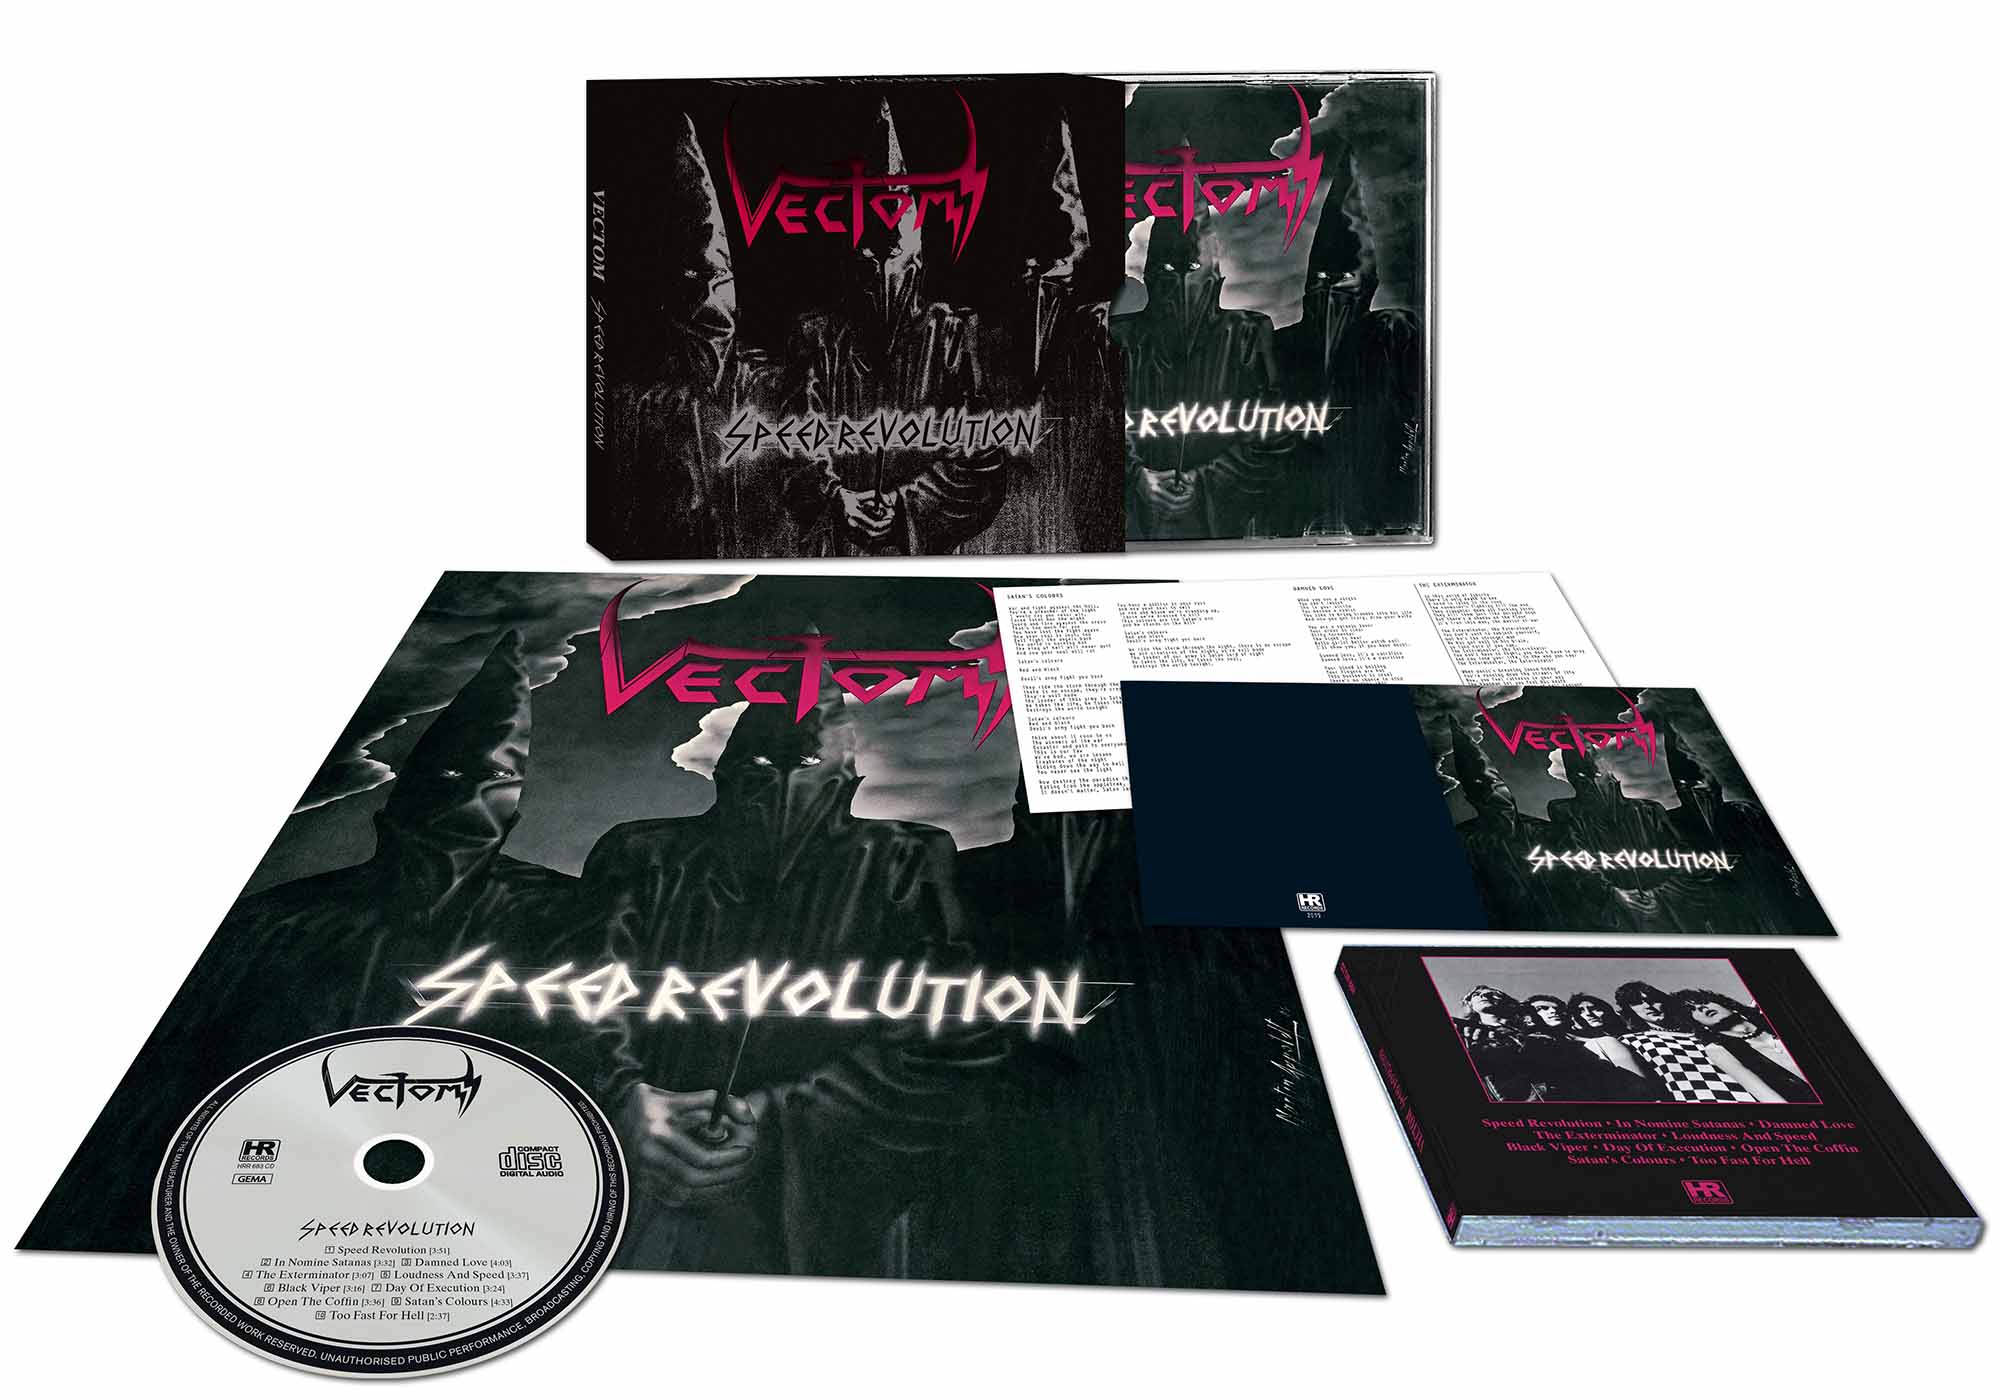 VECTOM - Speed Revolution  CD